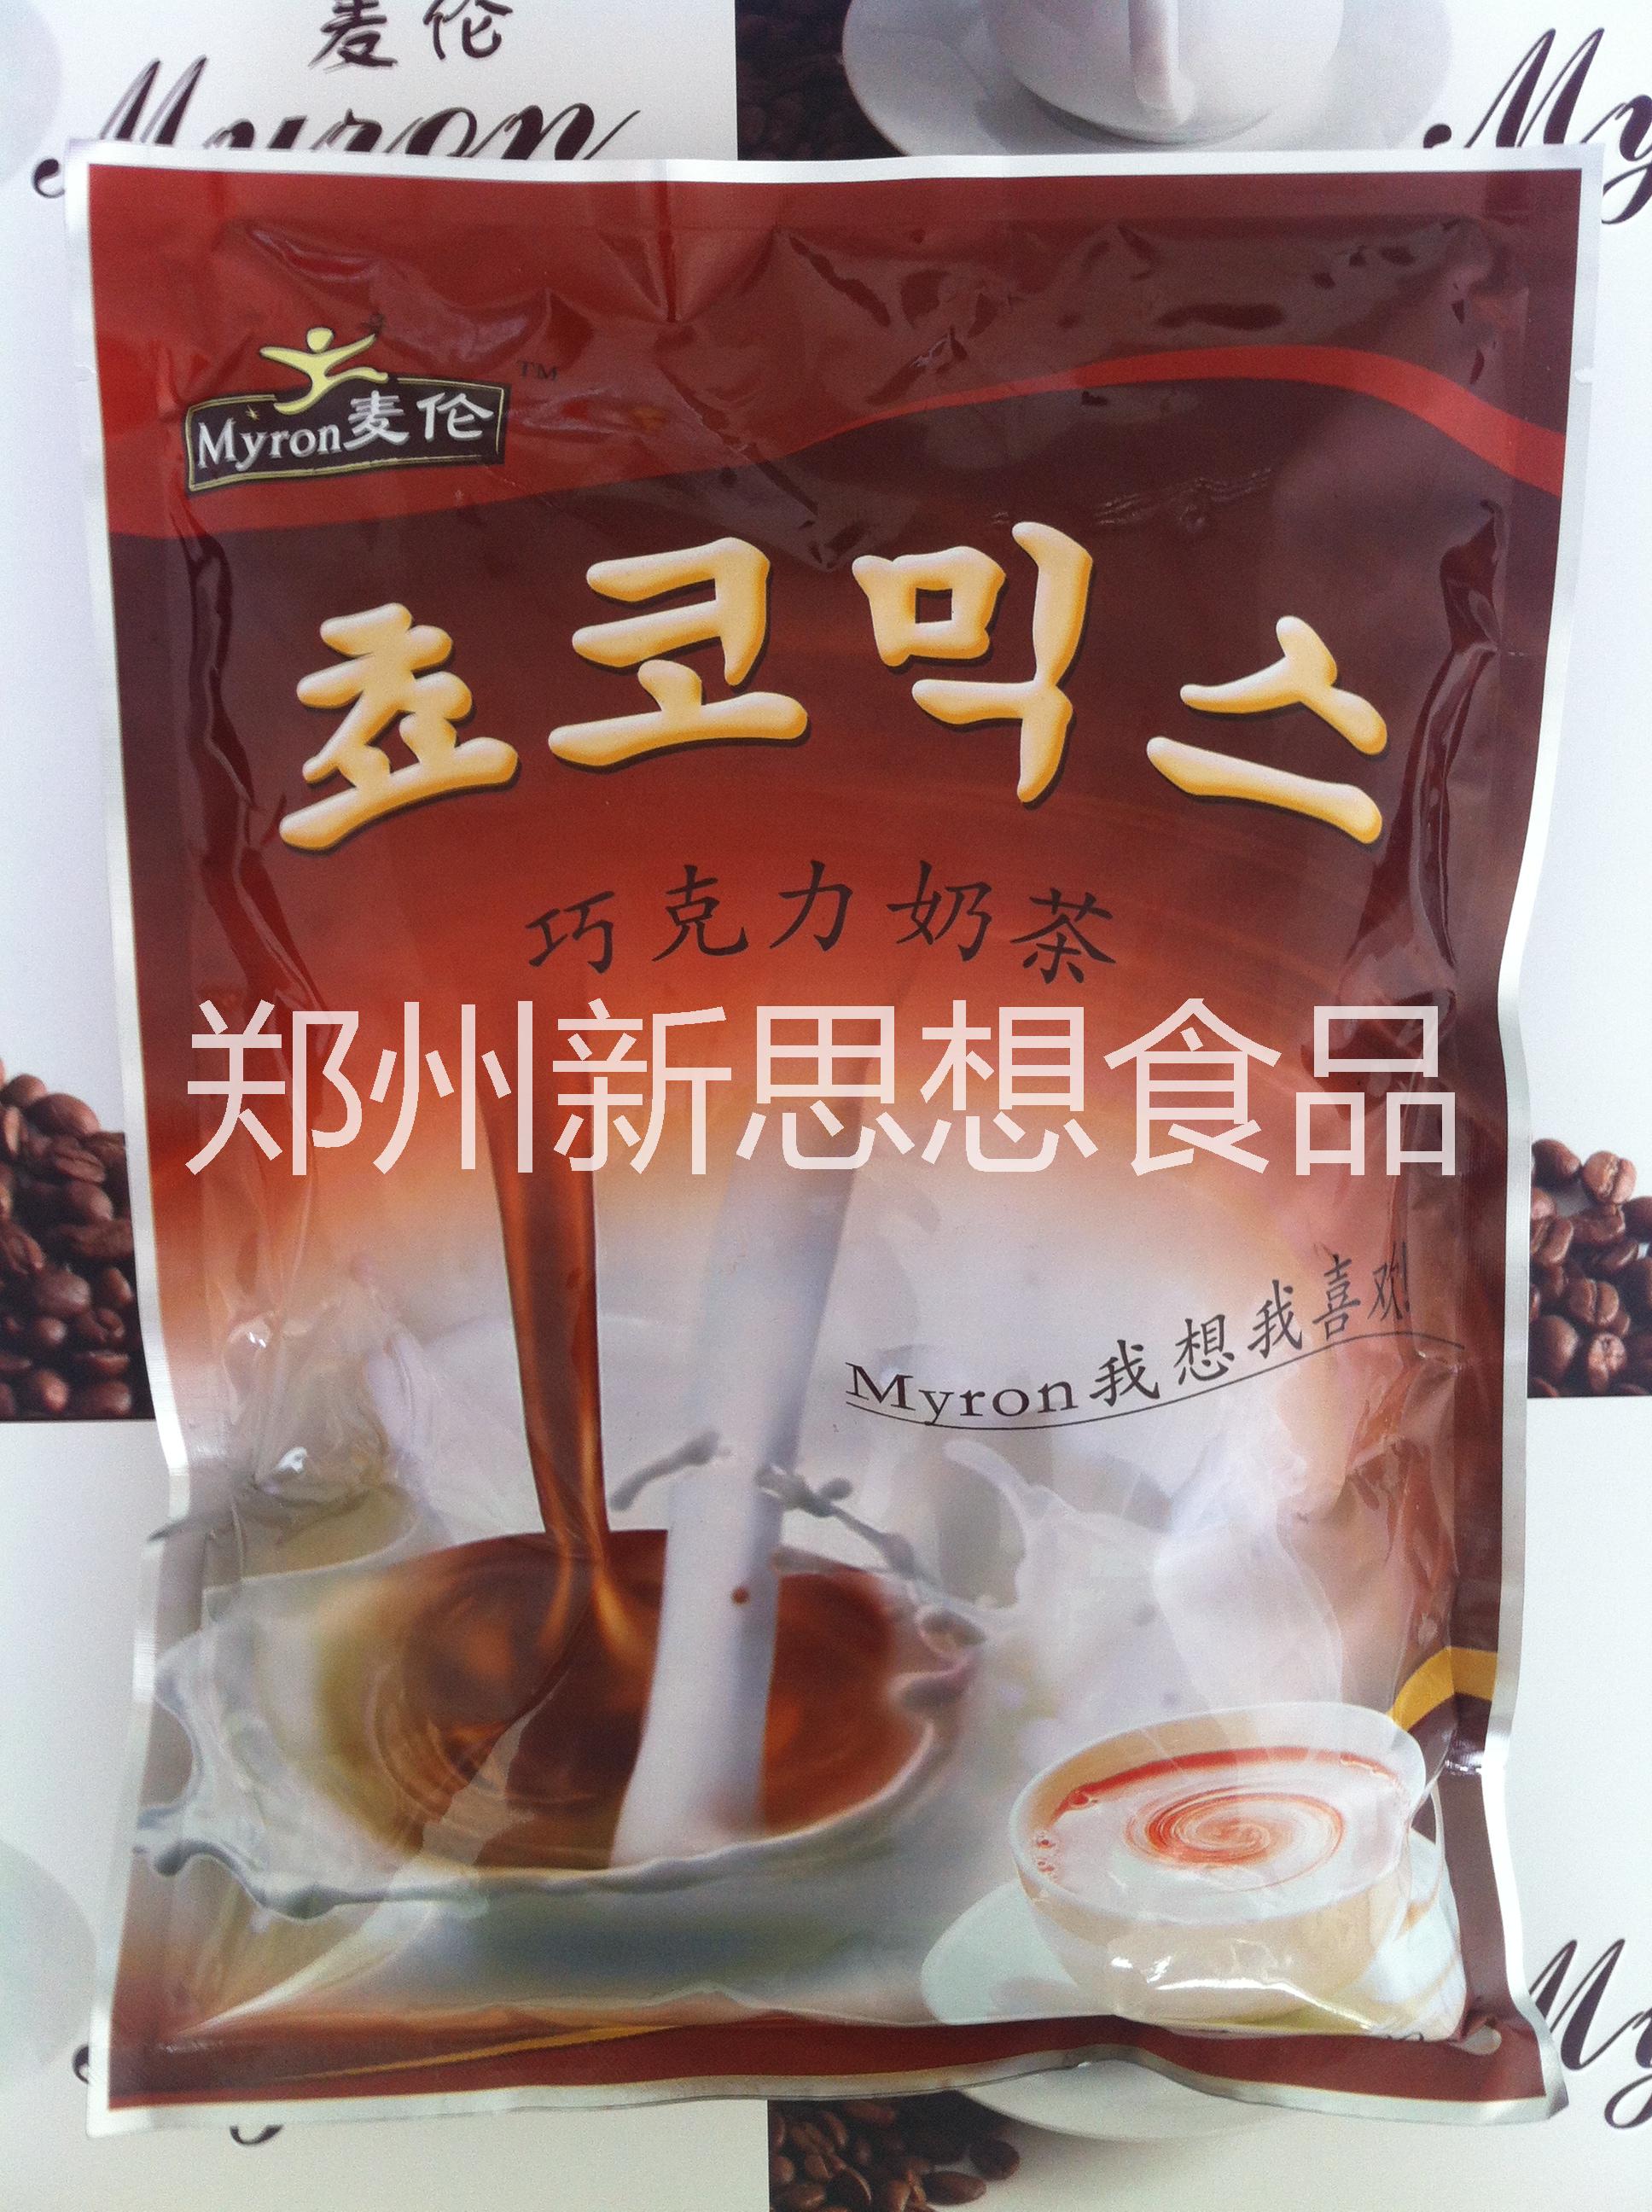 供应用于的三合一咖啡奶茶供货商(三合一咖啡粉,三合一原味奶茶,三合一咖啡奶茶粉)